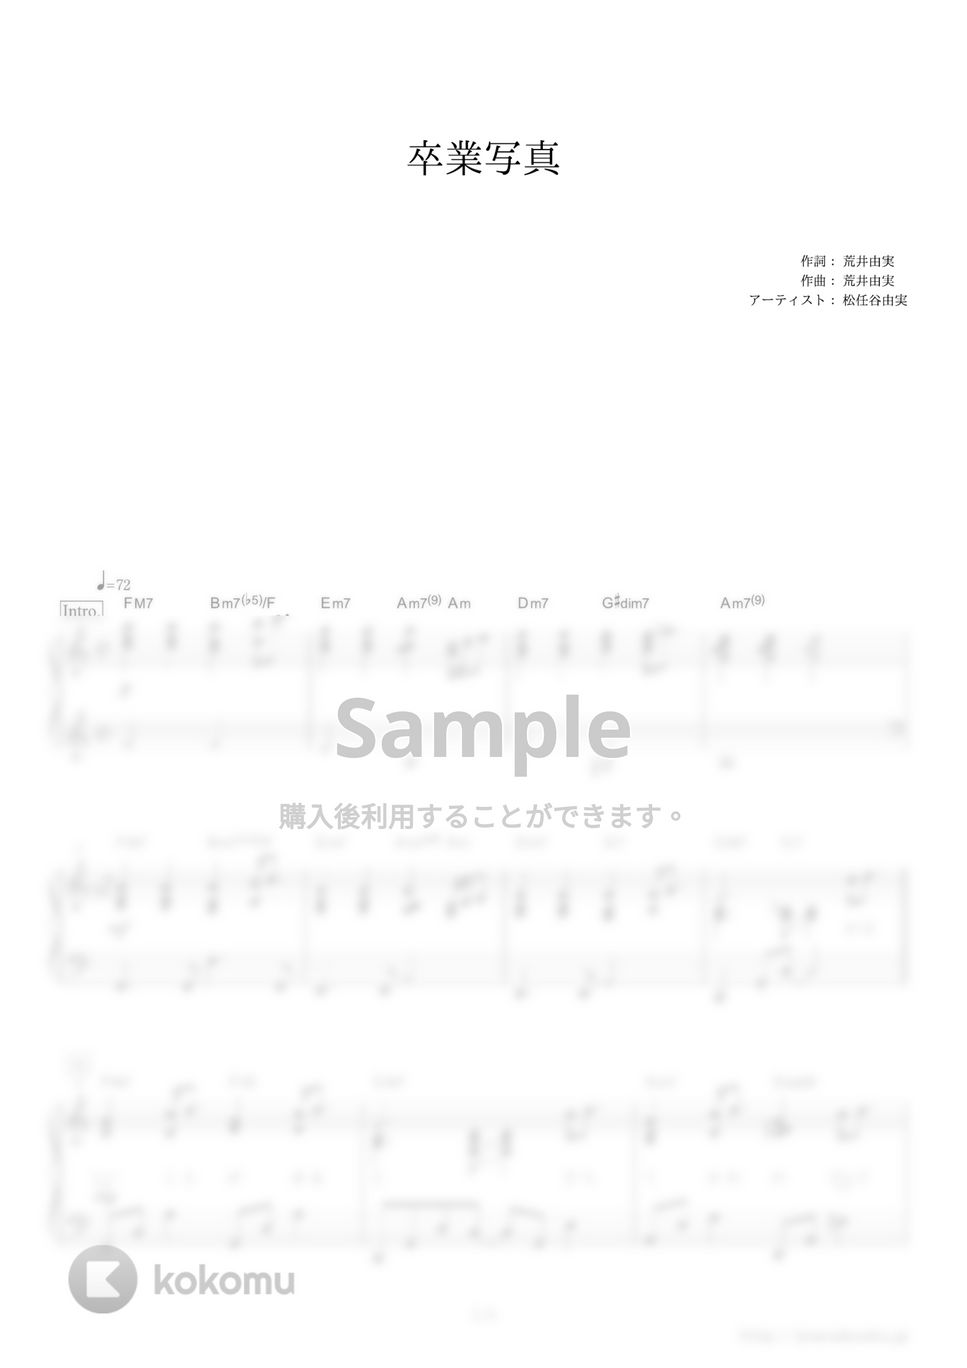 松任谷由実 - 卒業写真 by ピアノの本棚